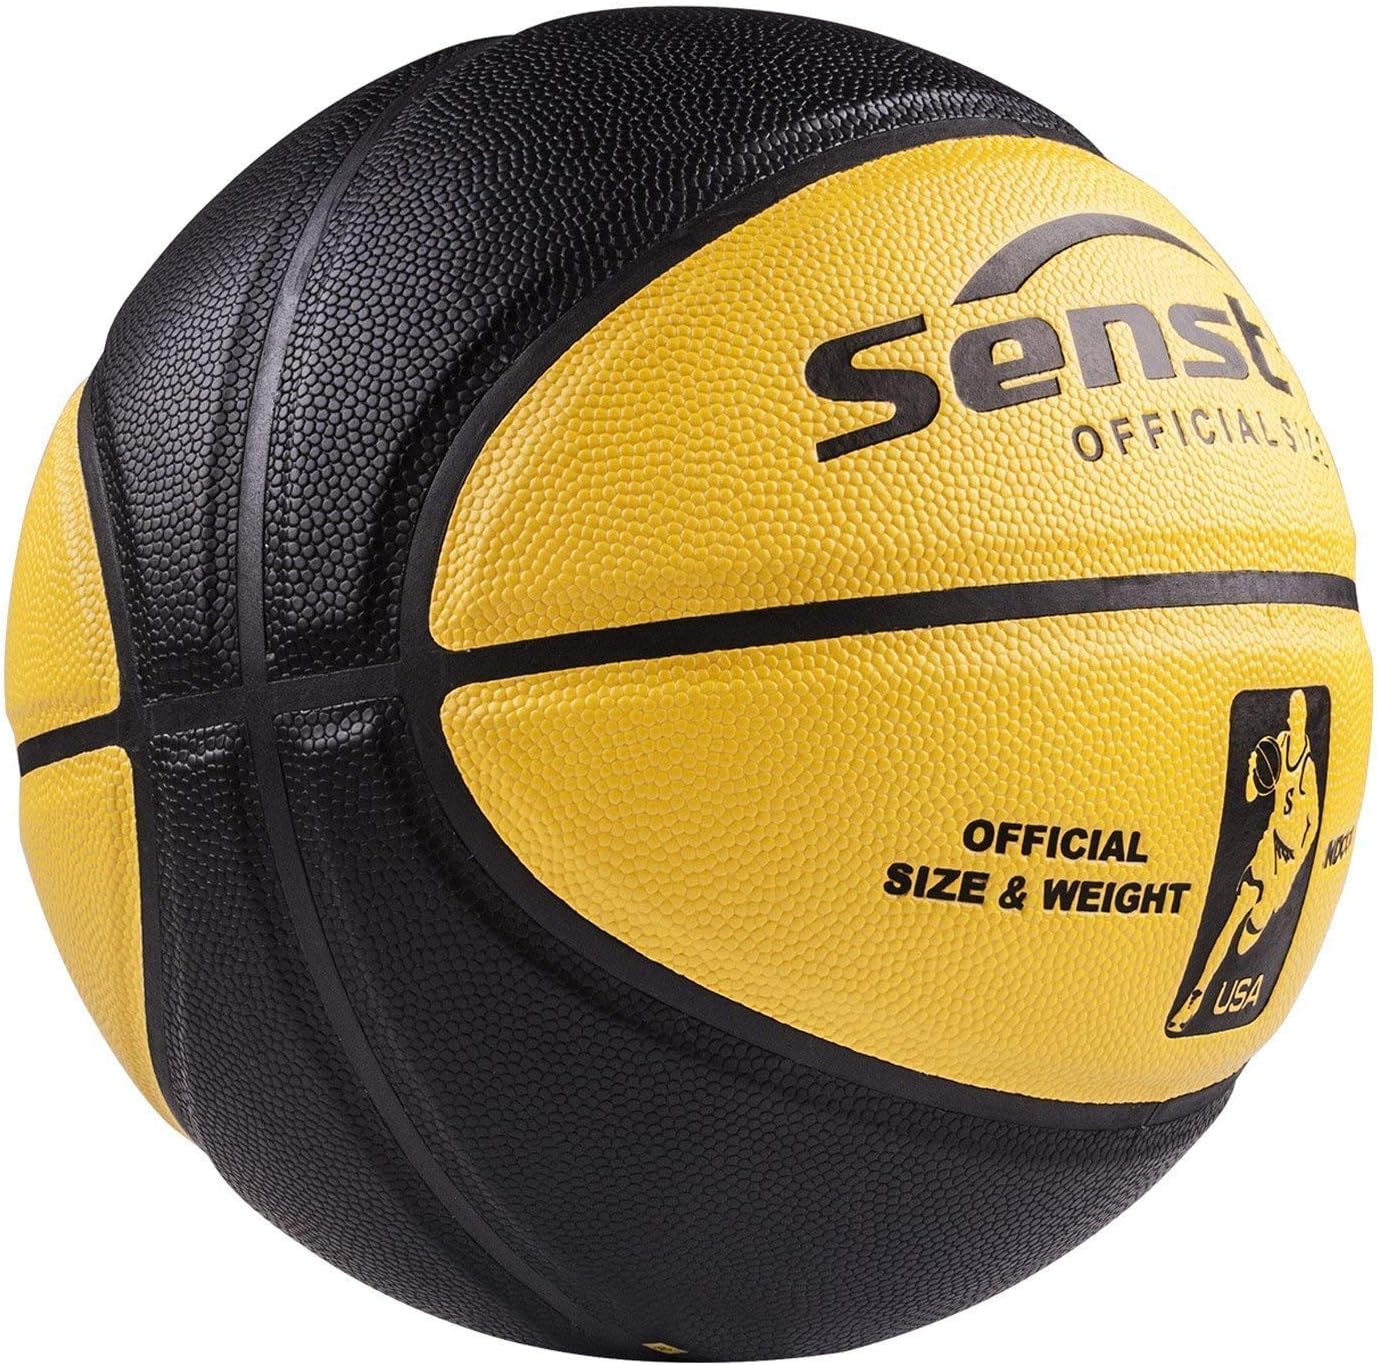 Senston Basketball 29.5" Outdoor Indoor Mens Basketball Ball Official Size 7 Basketballs